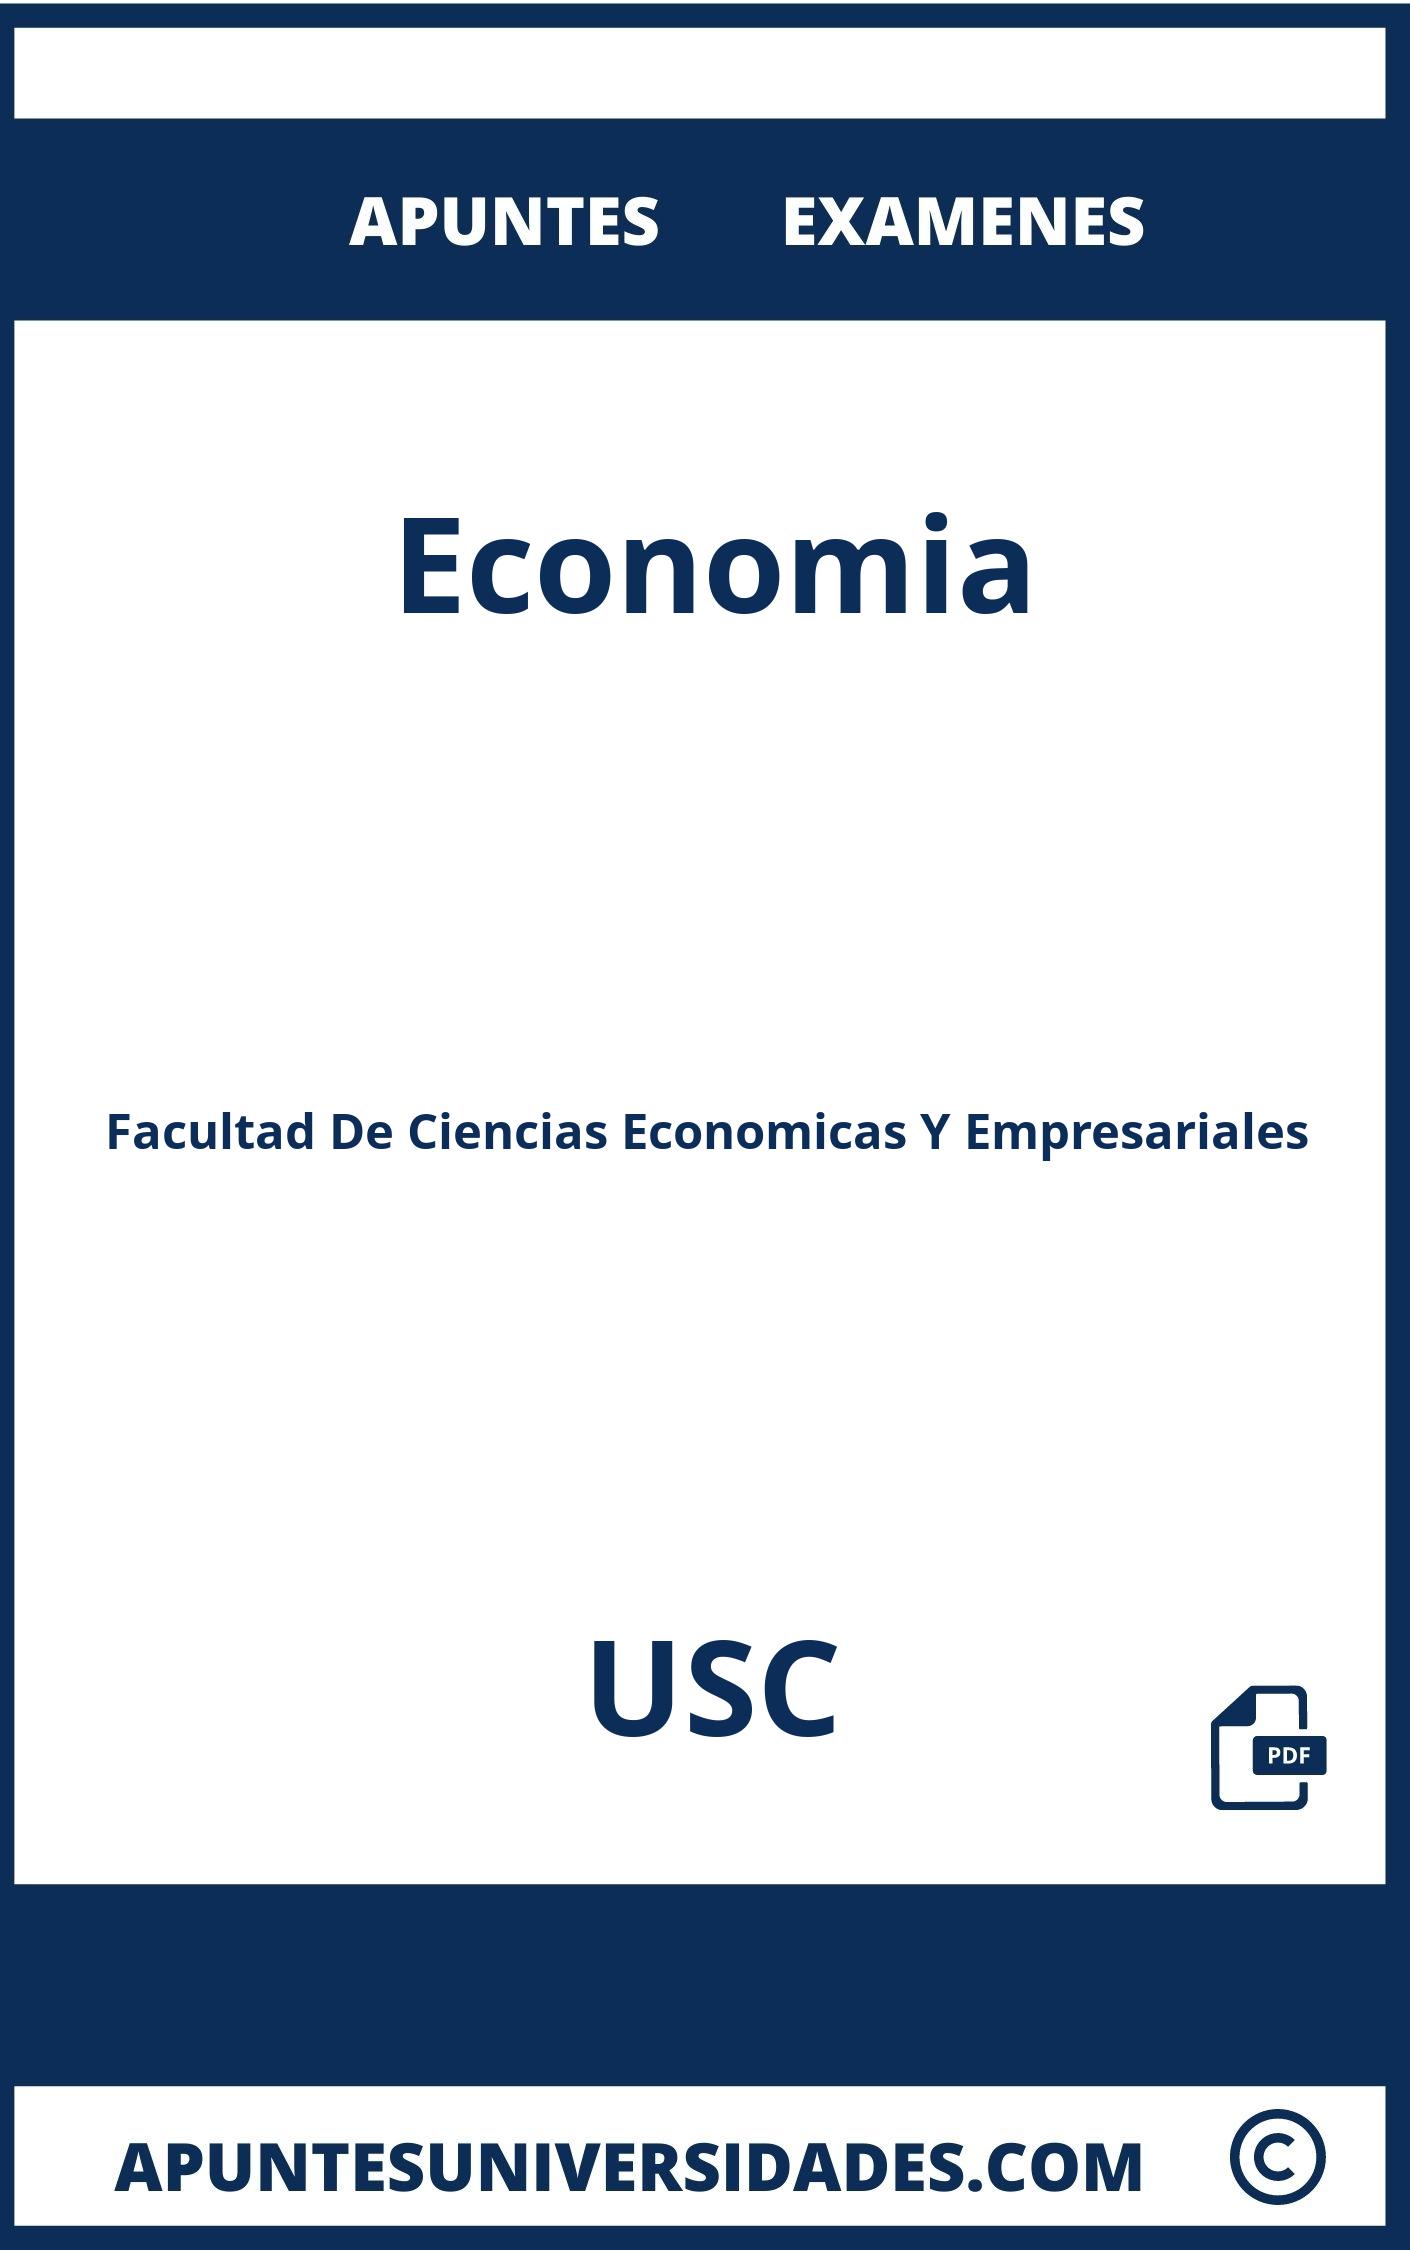 Apuntes Examenes Economia USC